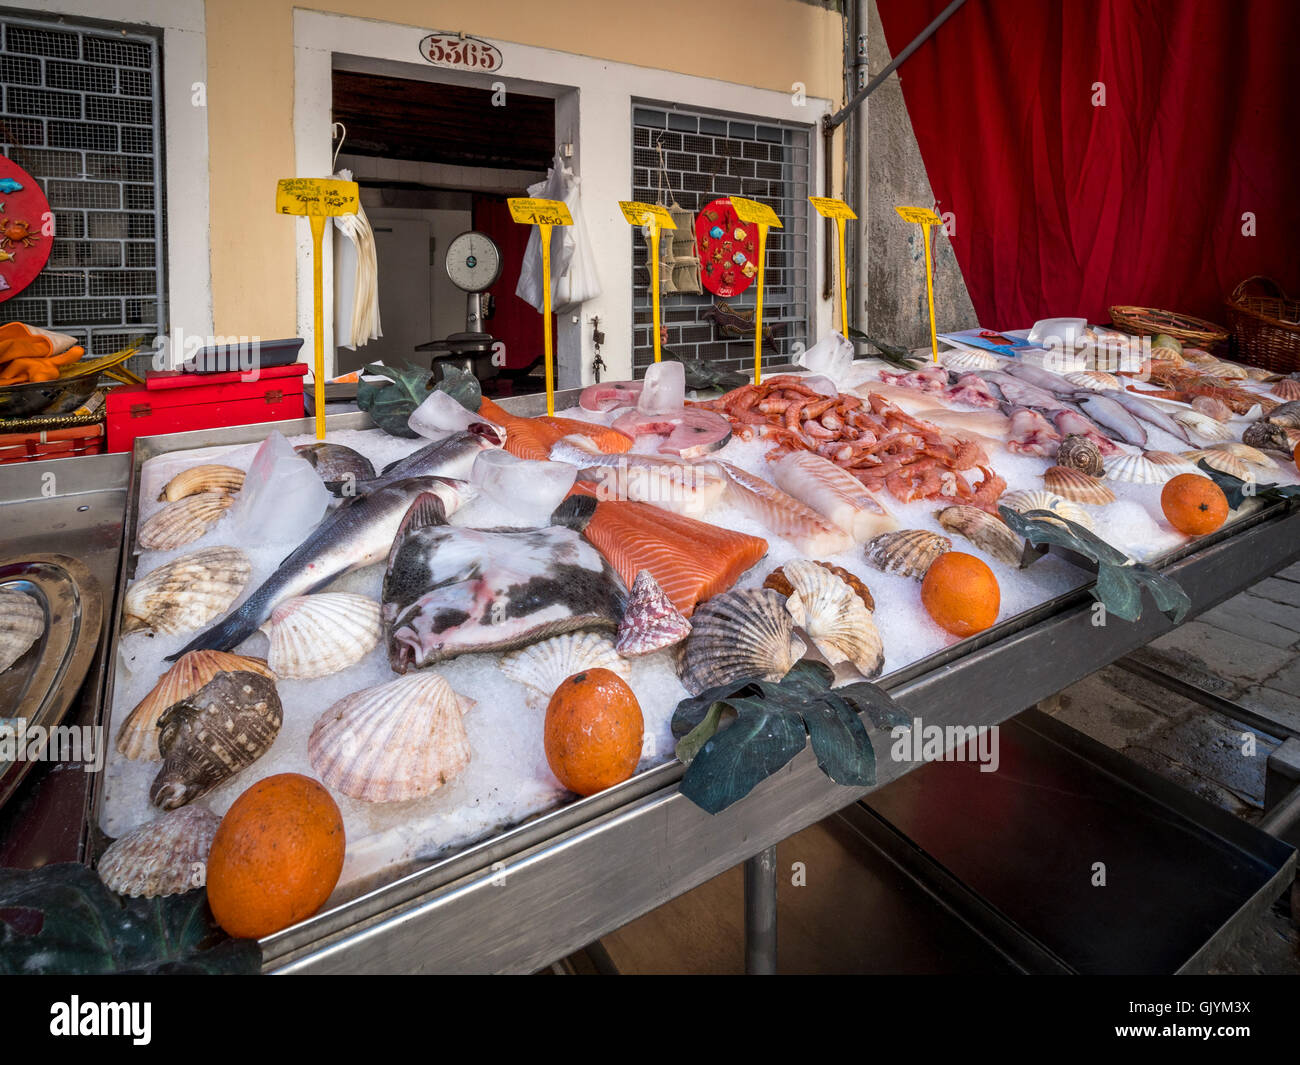 Bancarella vendendo il pesce appena pescato in una piazza veneziana o campo. Venezia, Italia. Foto Stock